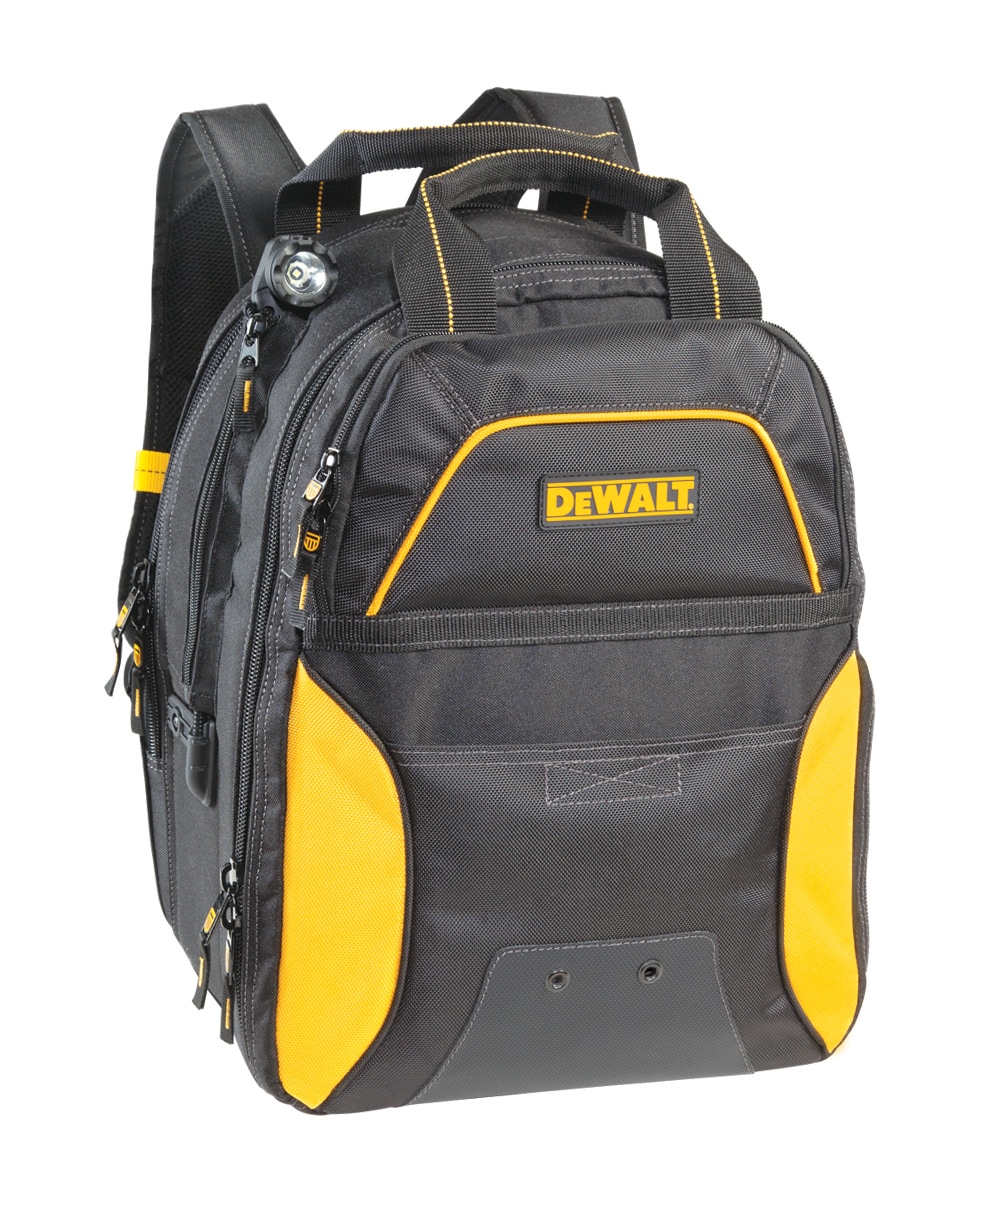 DEWALT DGCL33 33 Tool Pockets Lighted USB Charging Backpack for sale online 